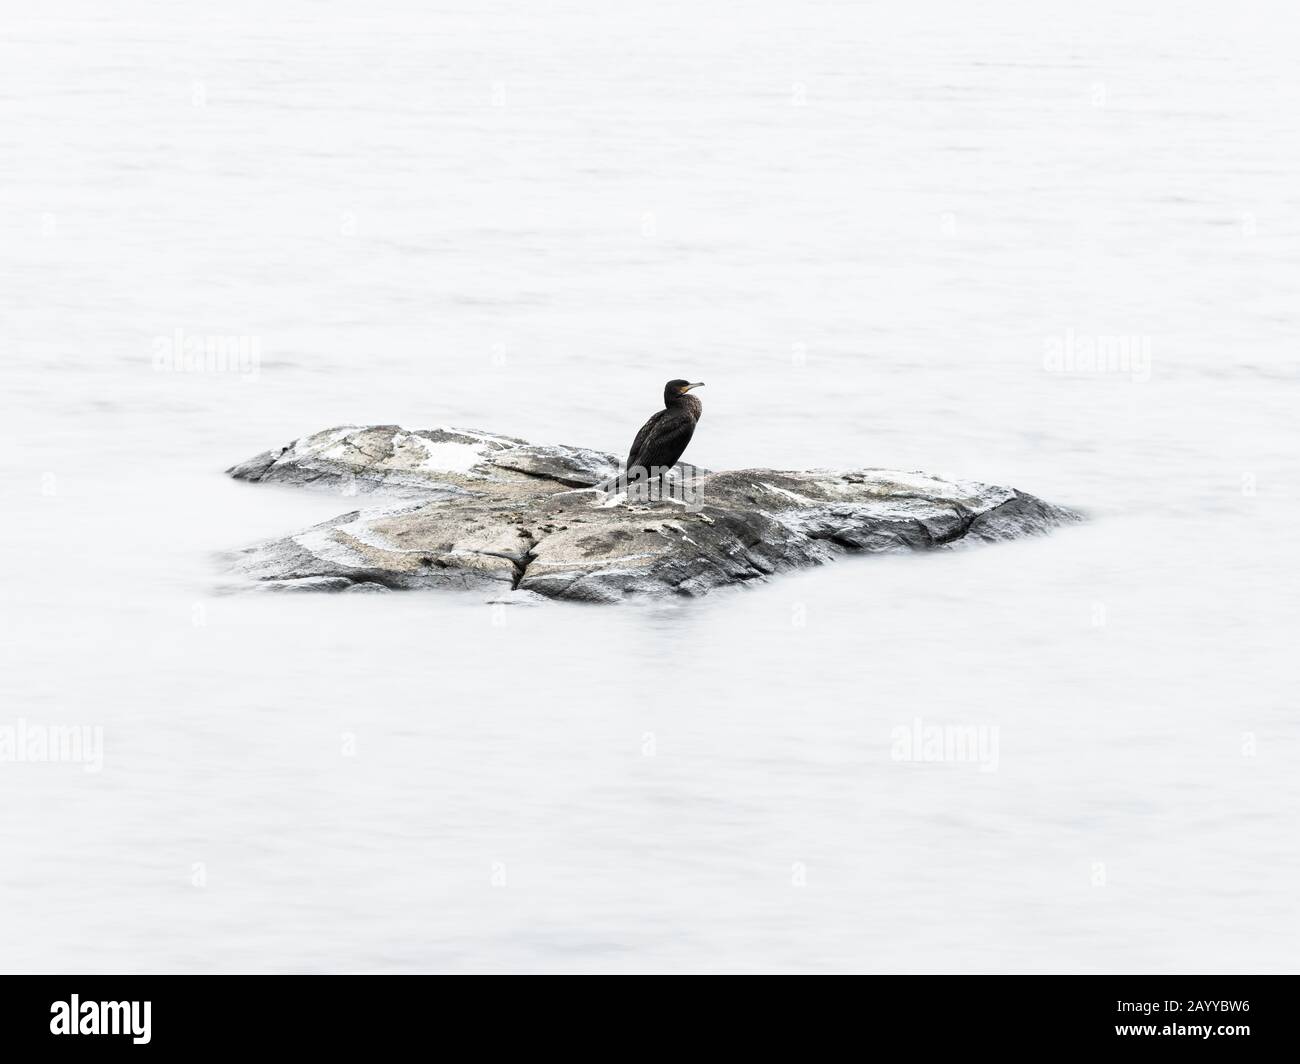 Januar 2018 - In Gothenburg, Schweden. Kormoran ruht auf einem Felsen in einem See. Die Höhepunkte des Wassers werden in der Postproduktion weiß. Stockfoto